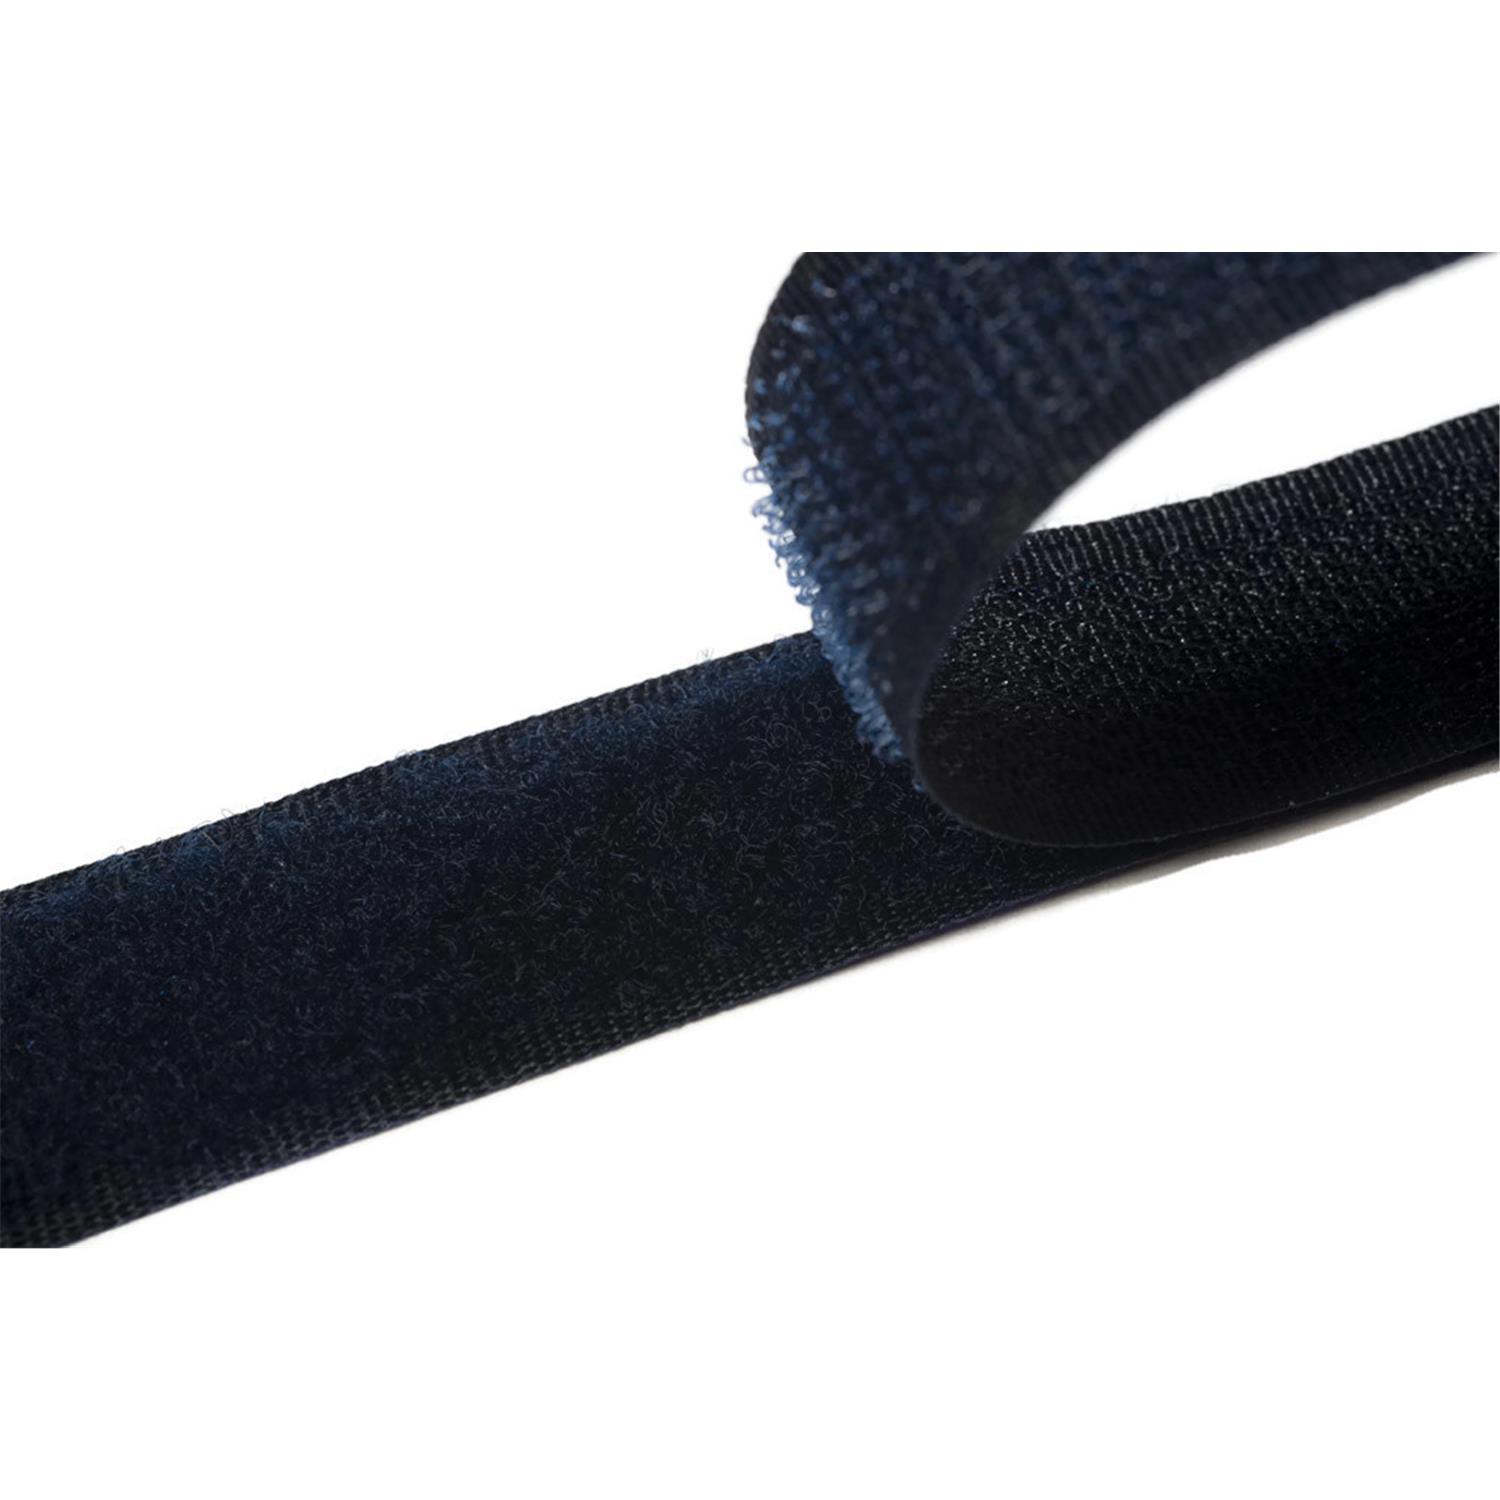 Klettband zum aufnähen, 25 mm, dunkelblau #07 4 Meter